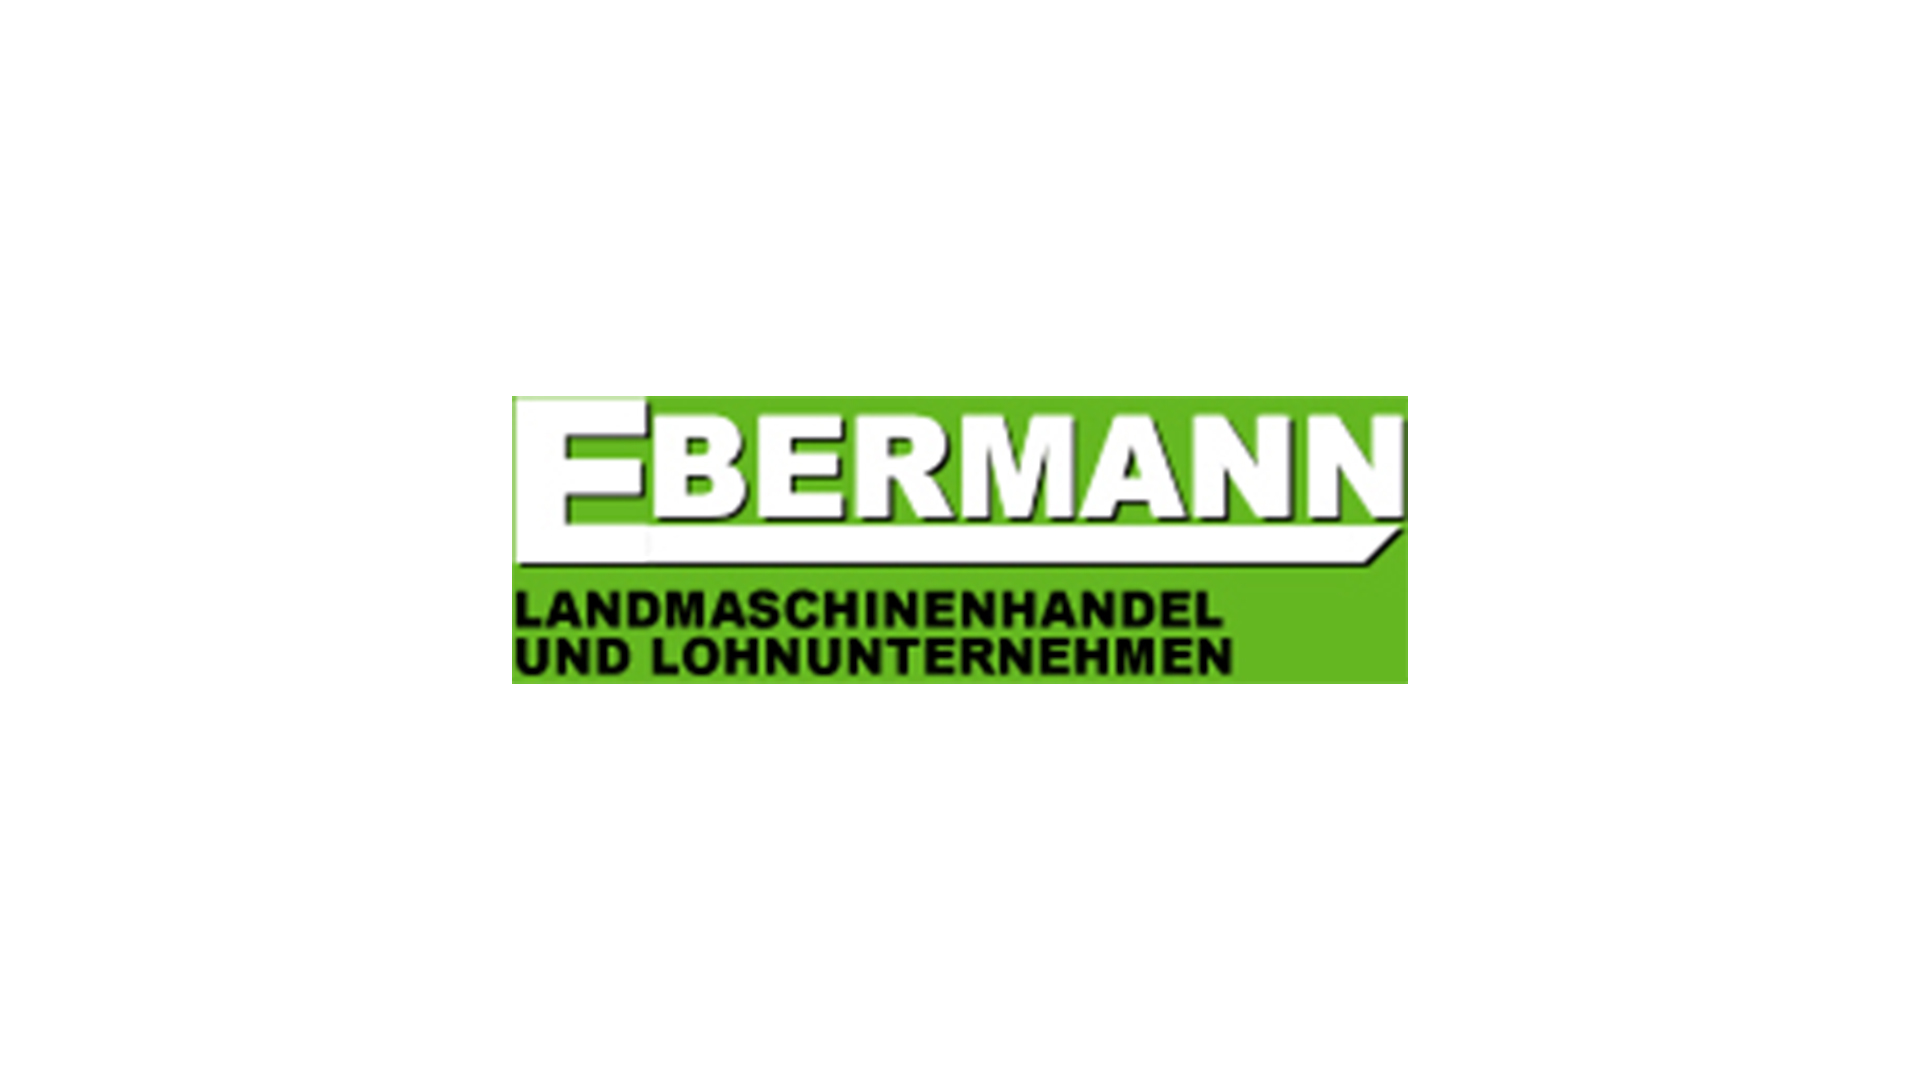 Ebermann